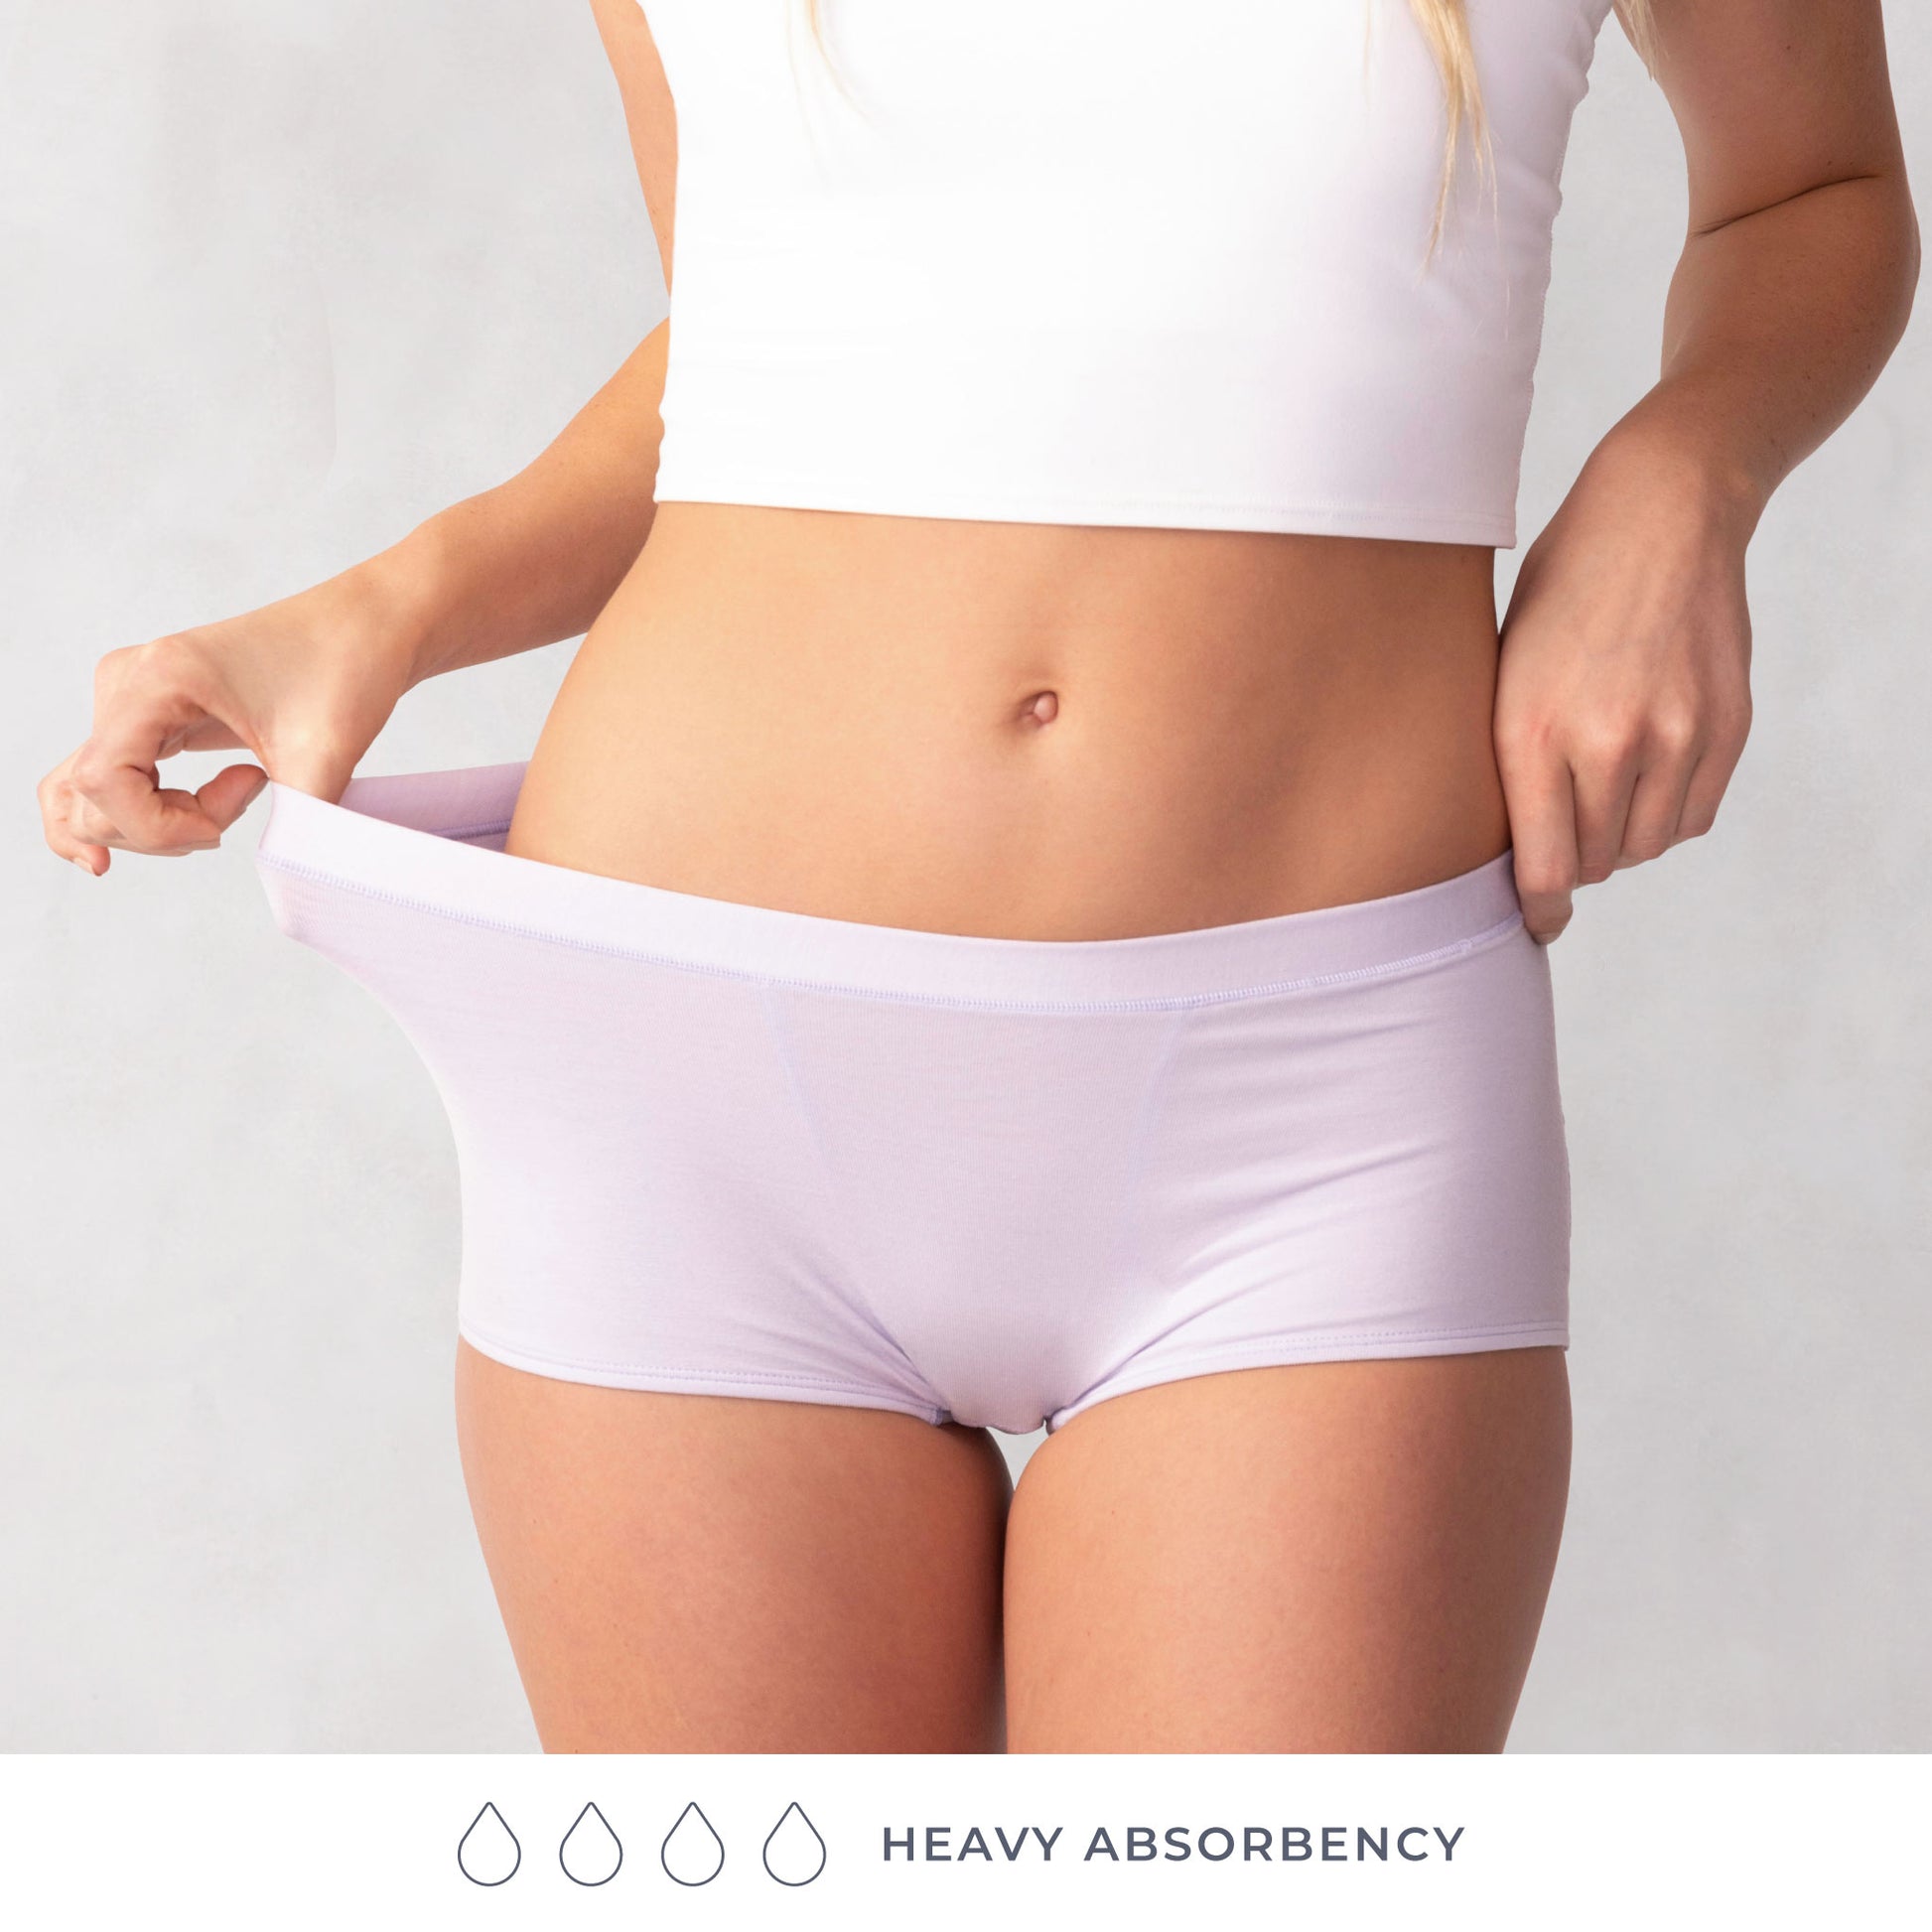  THINX Modal Cotton Boyshort Period Underwear For Women